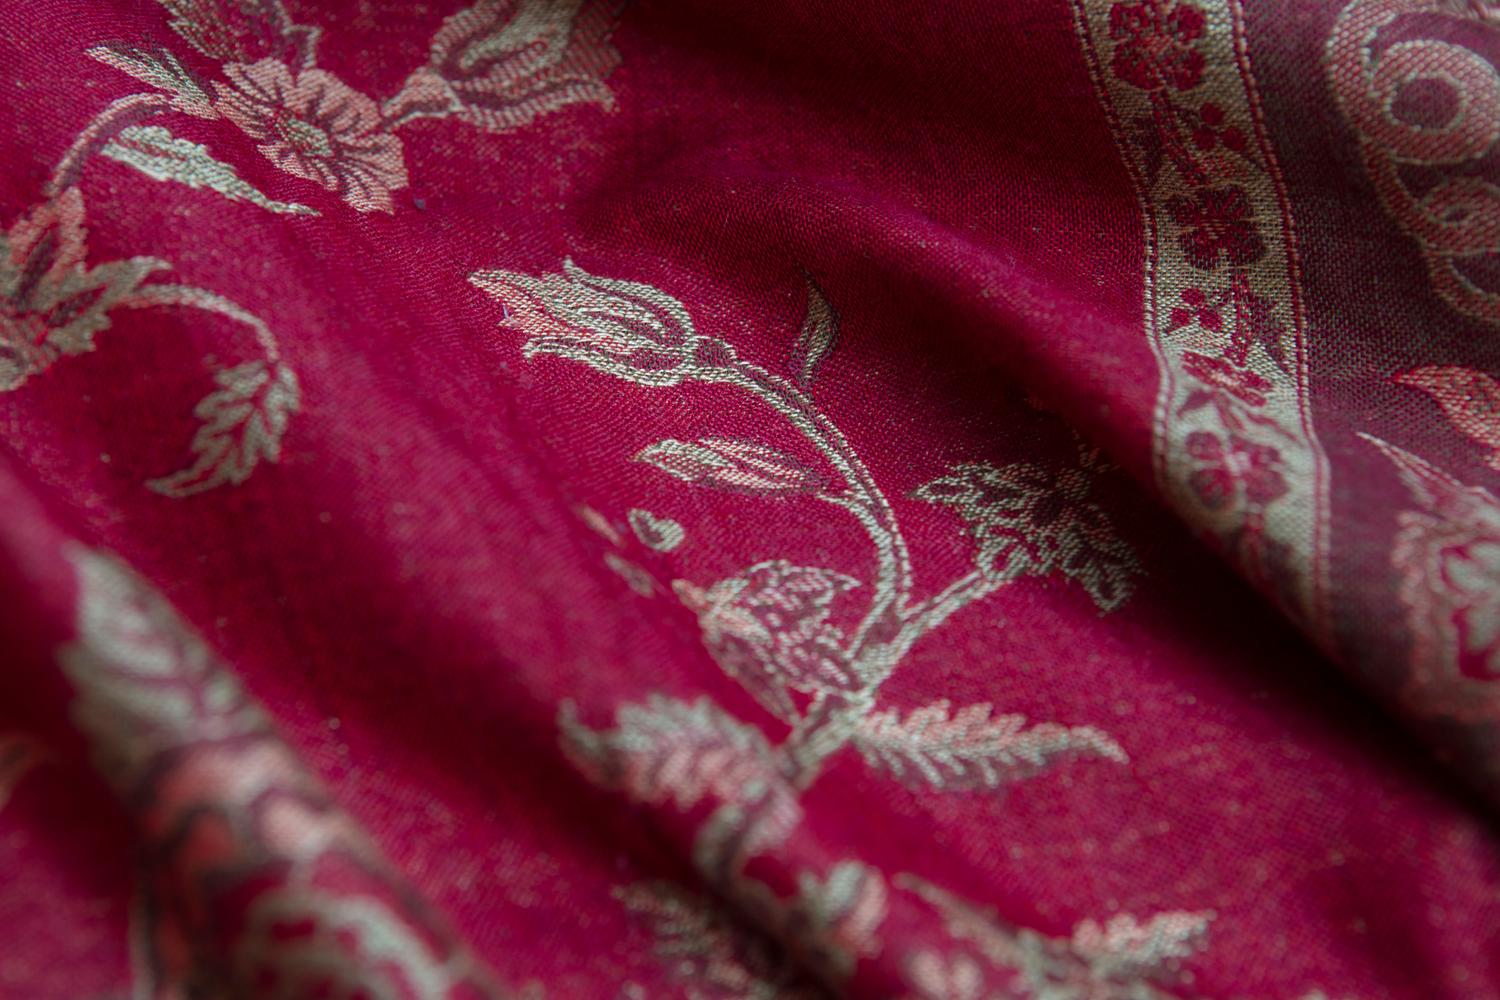 Schönes Beispiel eines reich gefärbten, einzigartigen handgewebten Kaschmir-Pashminas. In der historischen Region Kaschmir in Indien, hoch im Himalaya, wo die Pashmina-Ziegen weiden und wachsen, wird diese berühmte weiche und warme Wolle von den